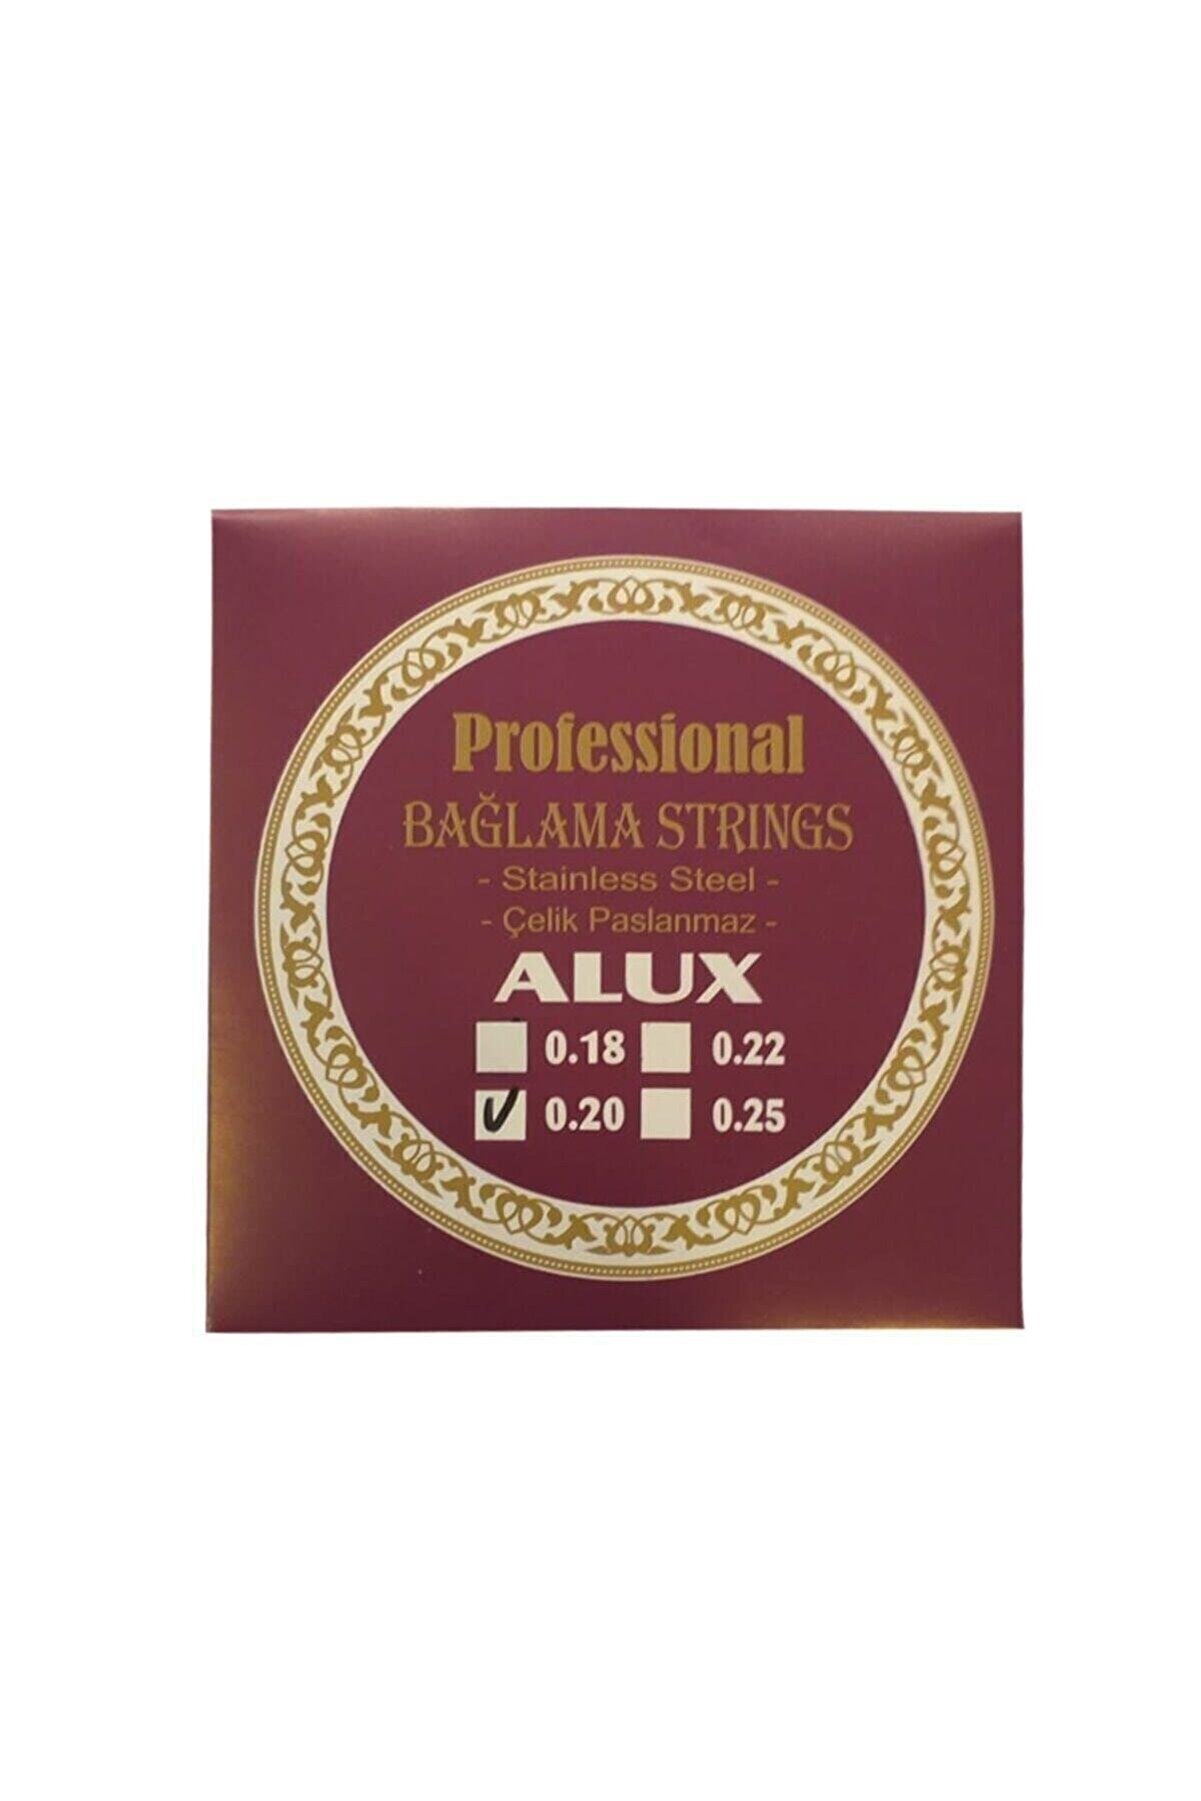 Alux 0,20 Uzun Sap Profosyonel Çelik Bağlama Saz Teli